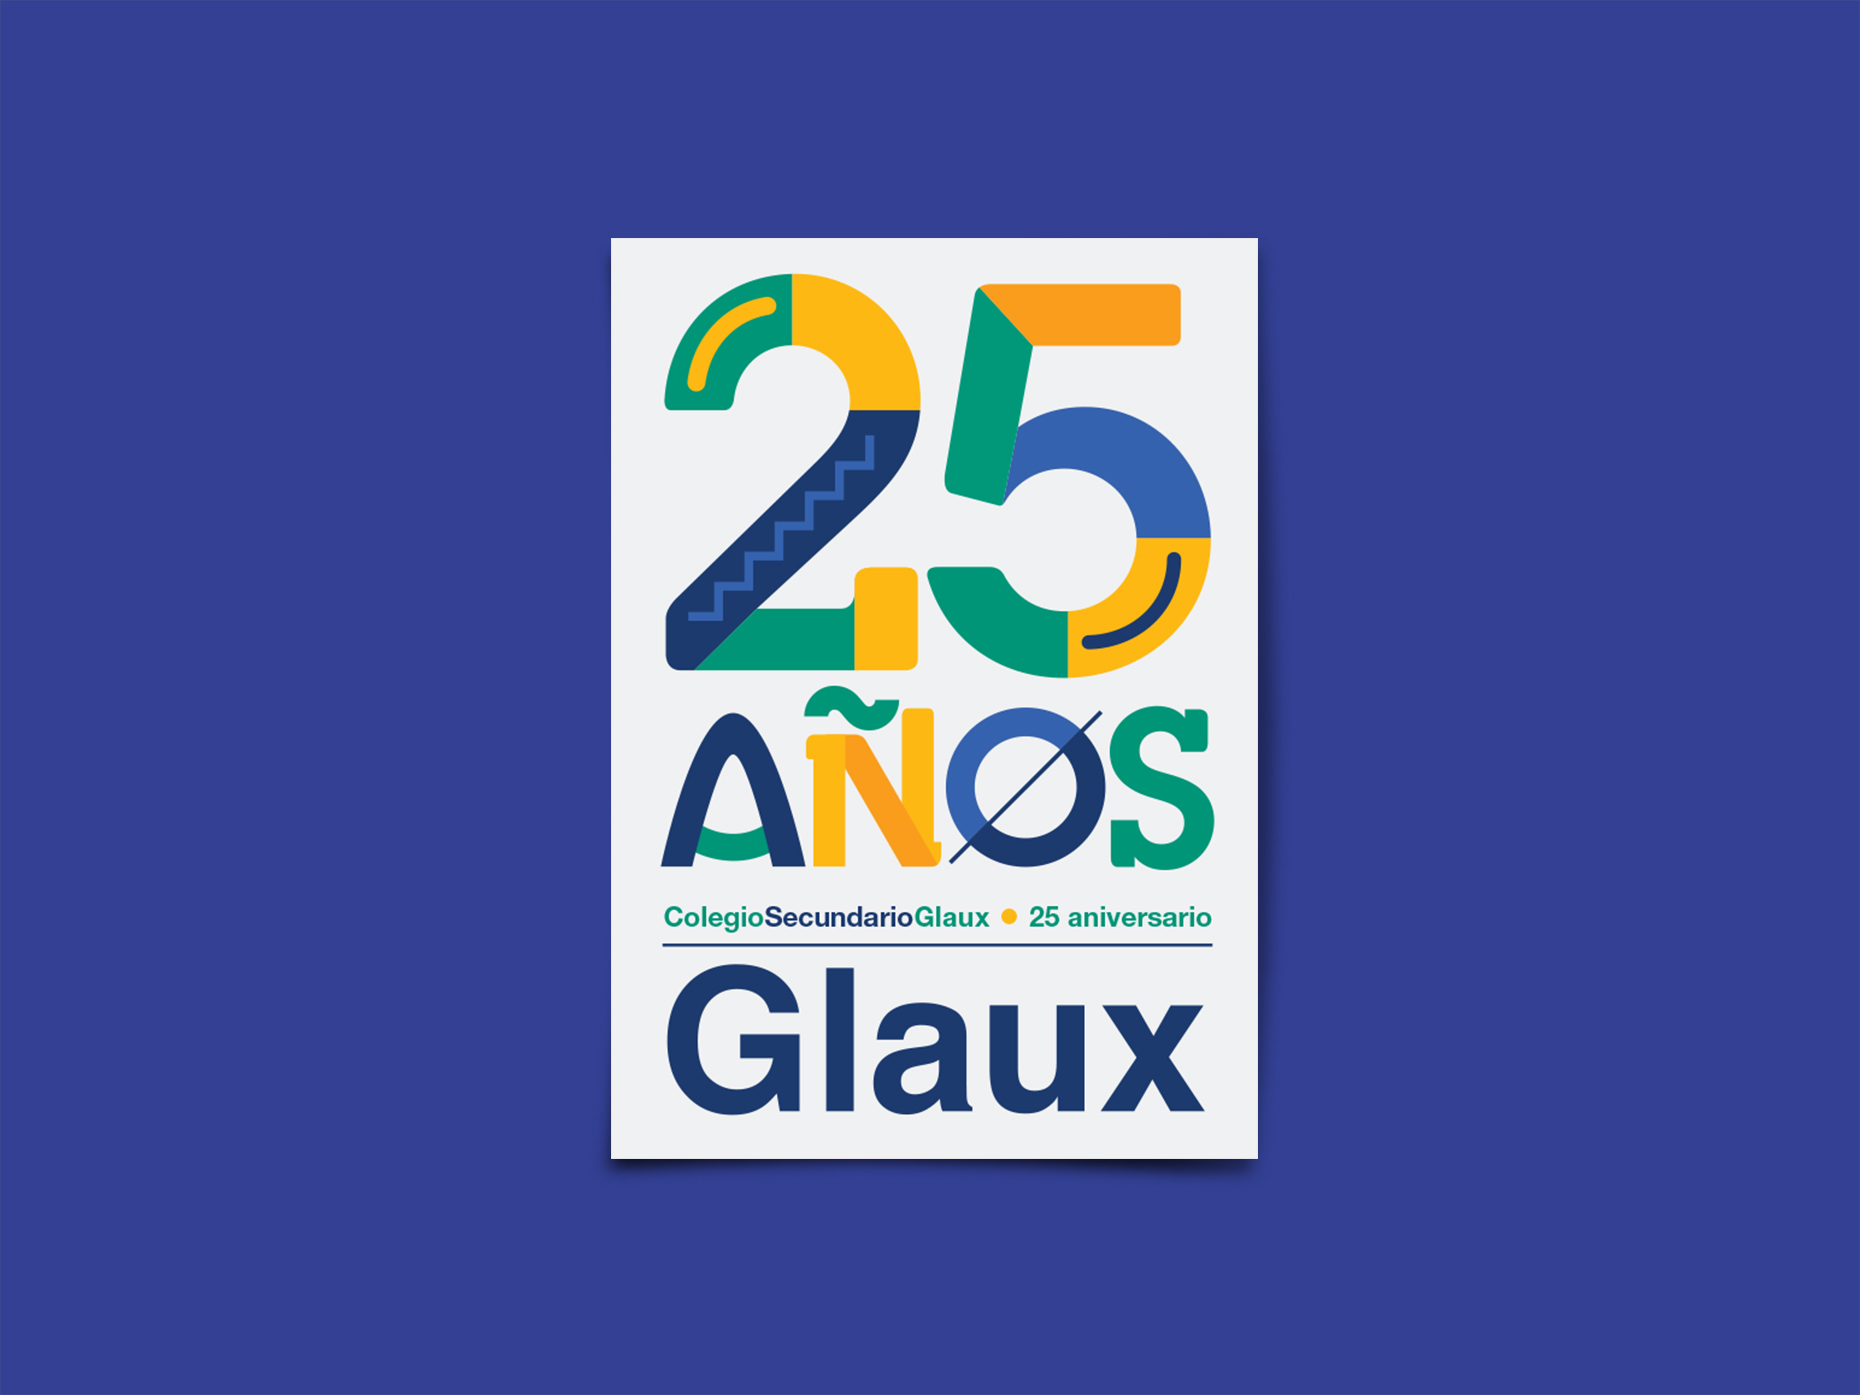 Glaux_02